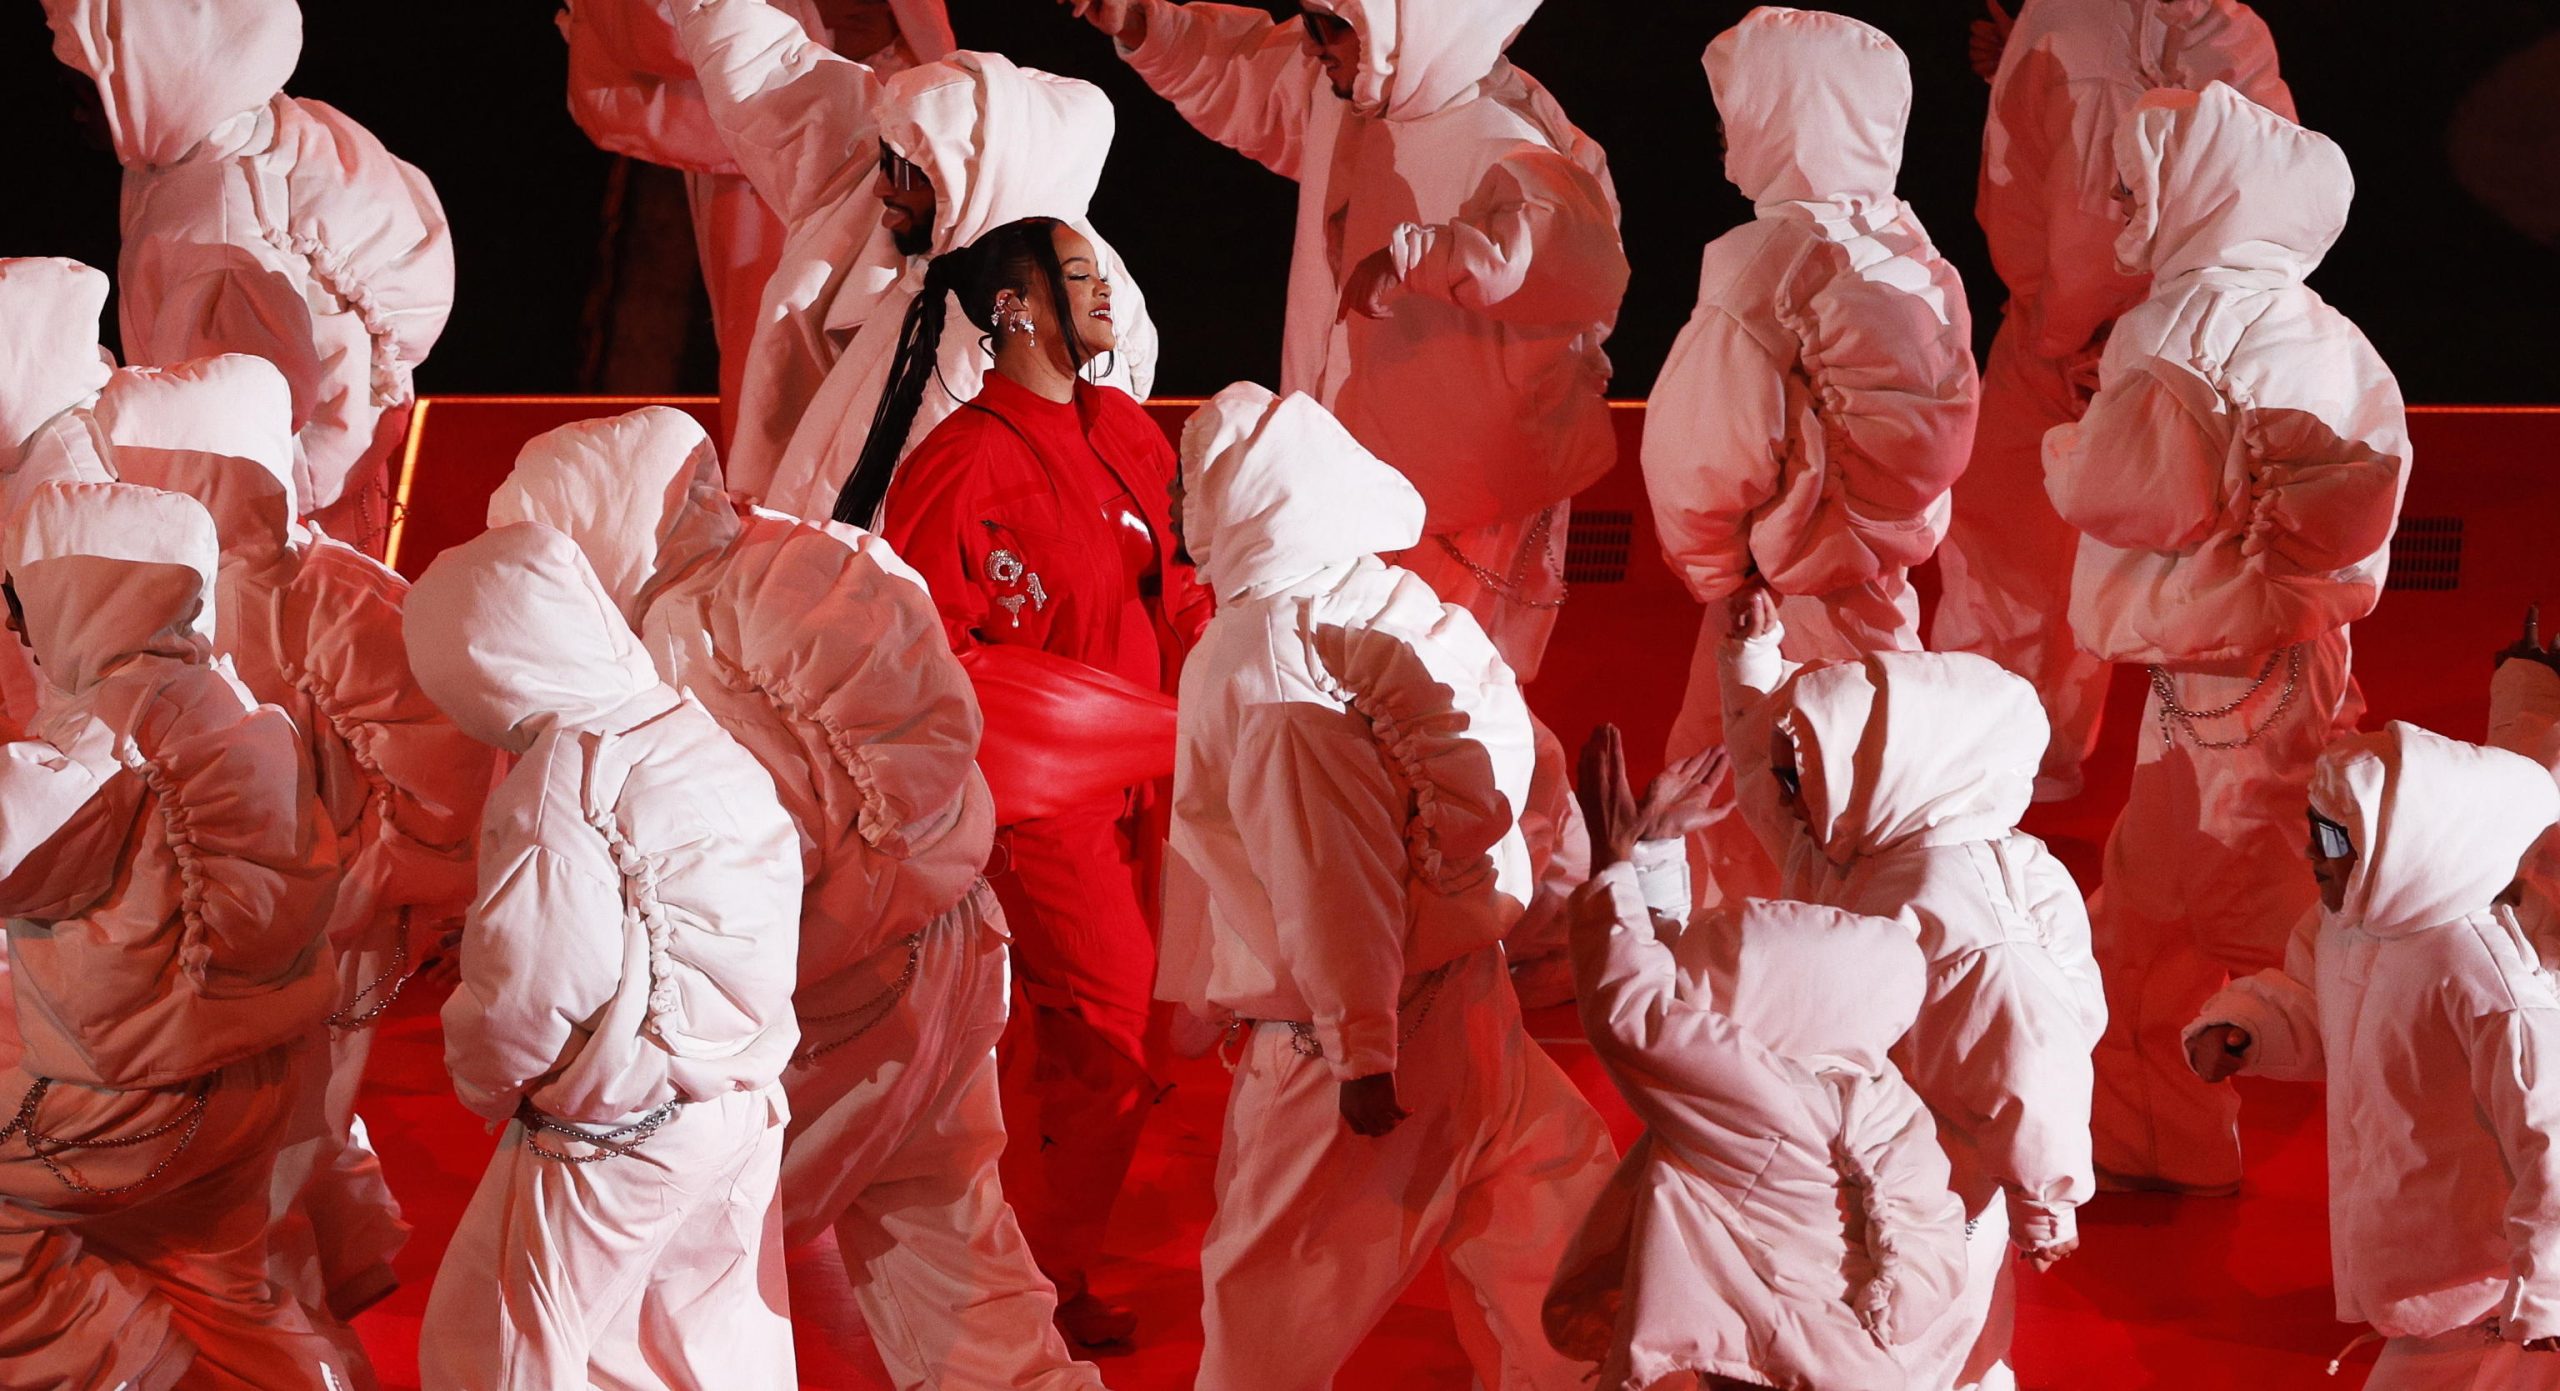 La cantante Rihanna durante l'esibizione con il suo corpo di ballo